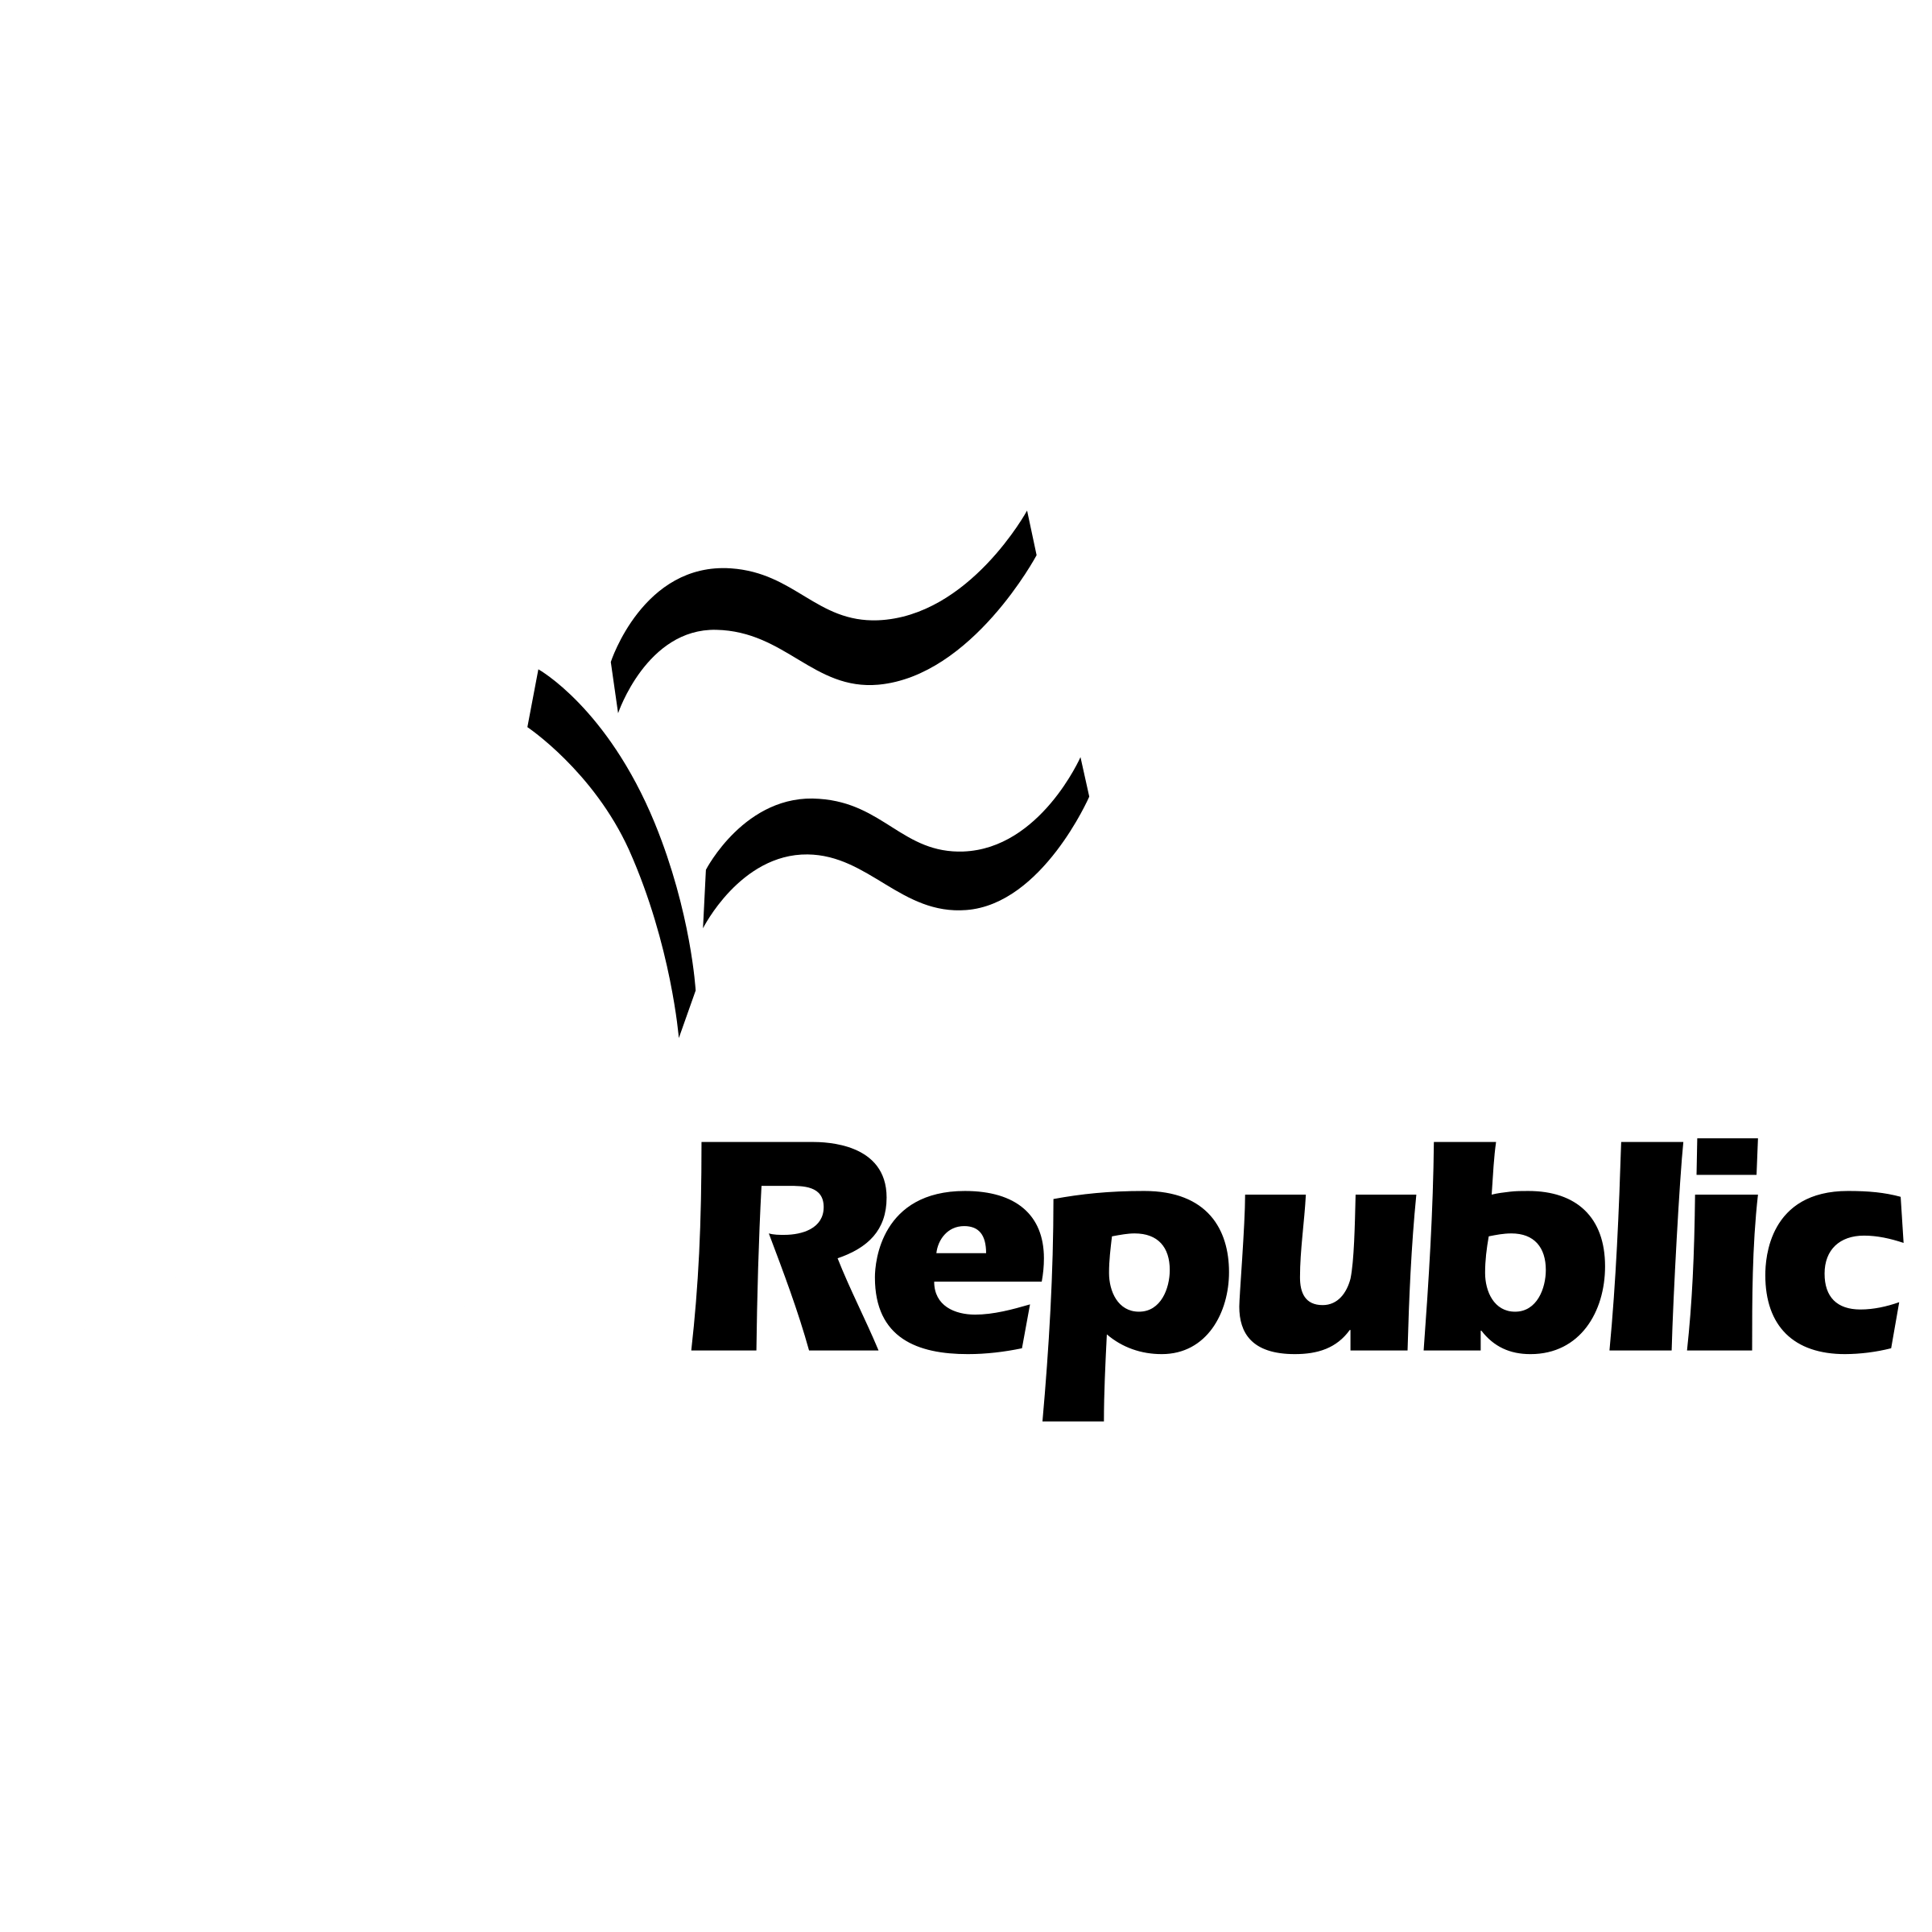 TechRepublic Logo - TechRepublic Logo PNG Transparent & SVG Vector